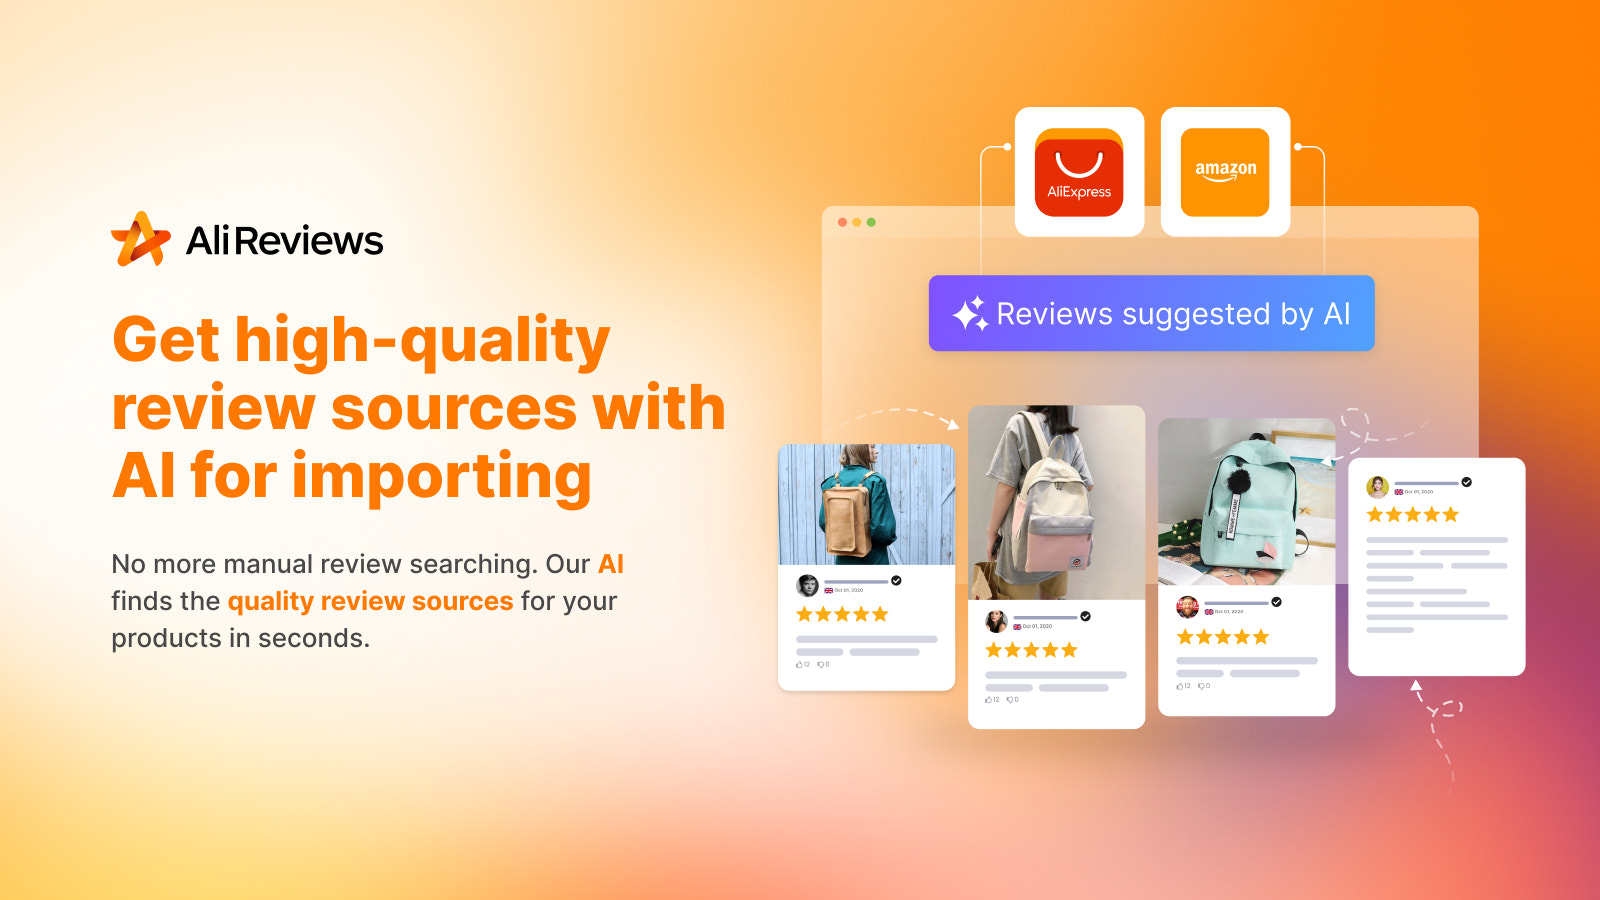 Ali Reviews utiliza IA para sugerir fuentes de reseñas de calidad